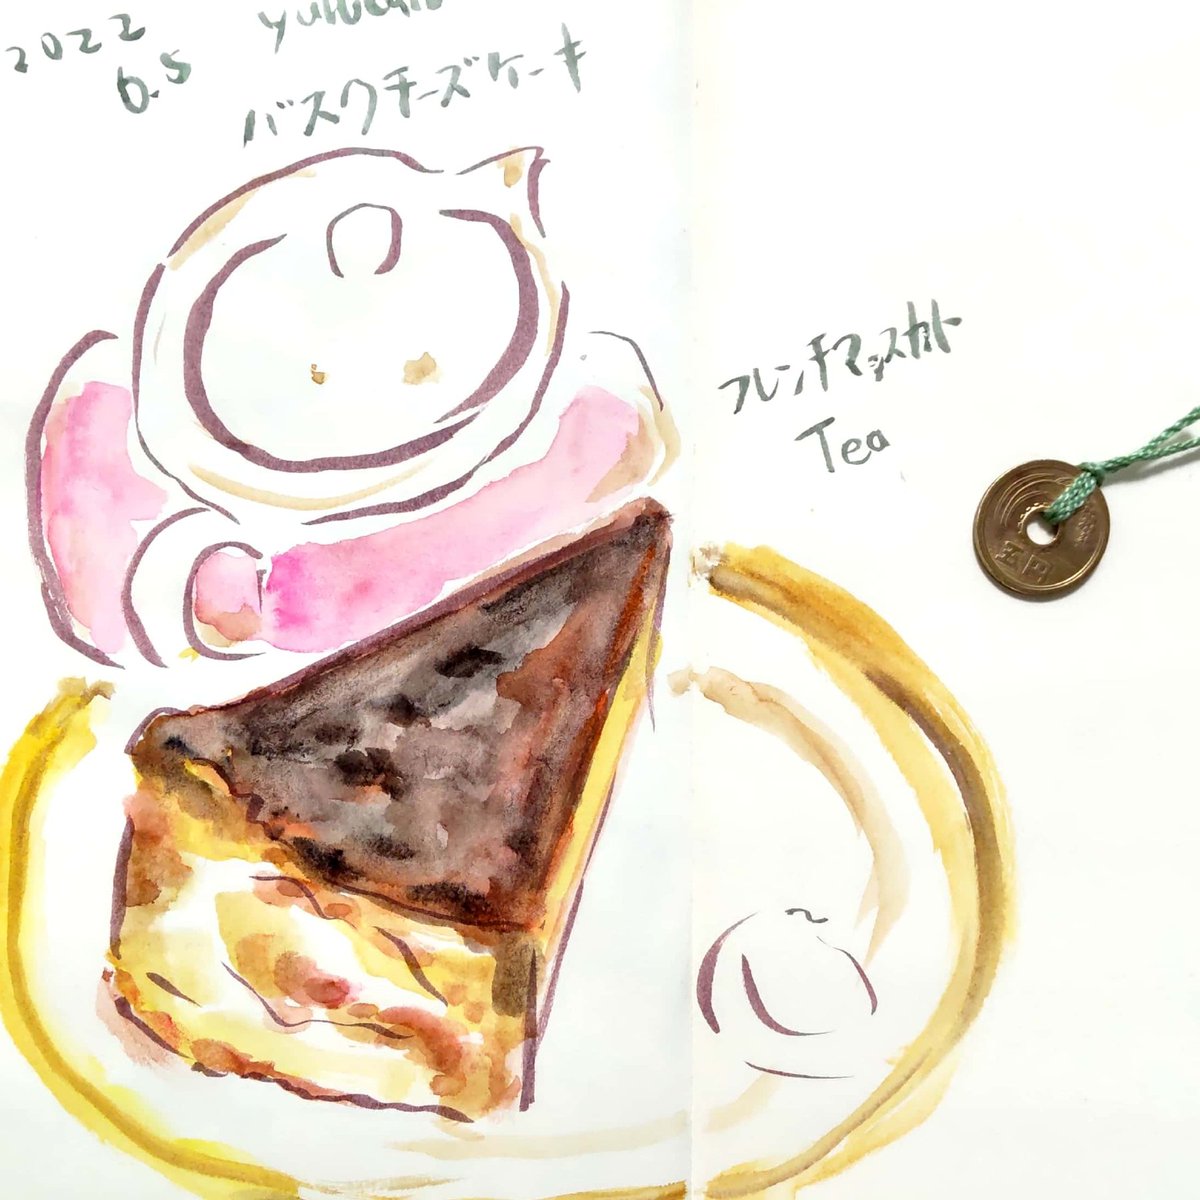 バスクチーズケーキ のイラスト マンガ コスプレ モデル作品 7 件 Twoucan